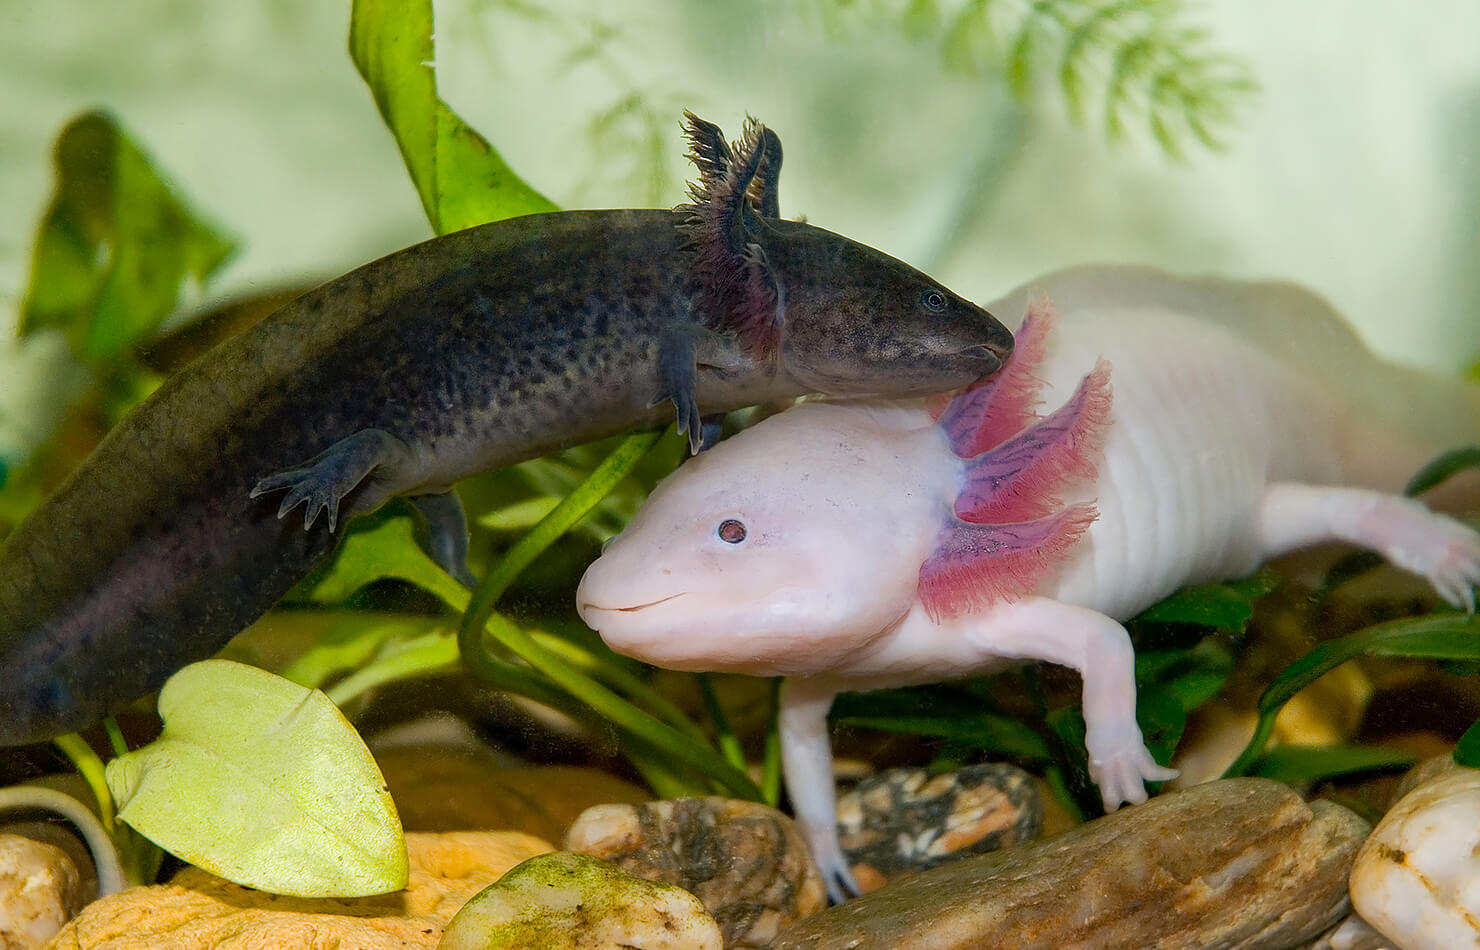 Salamander Vs Axolotl Fight Comparison- Who Will Win